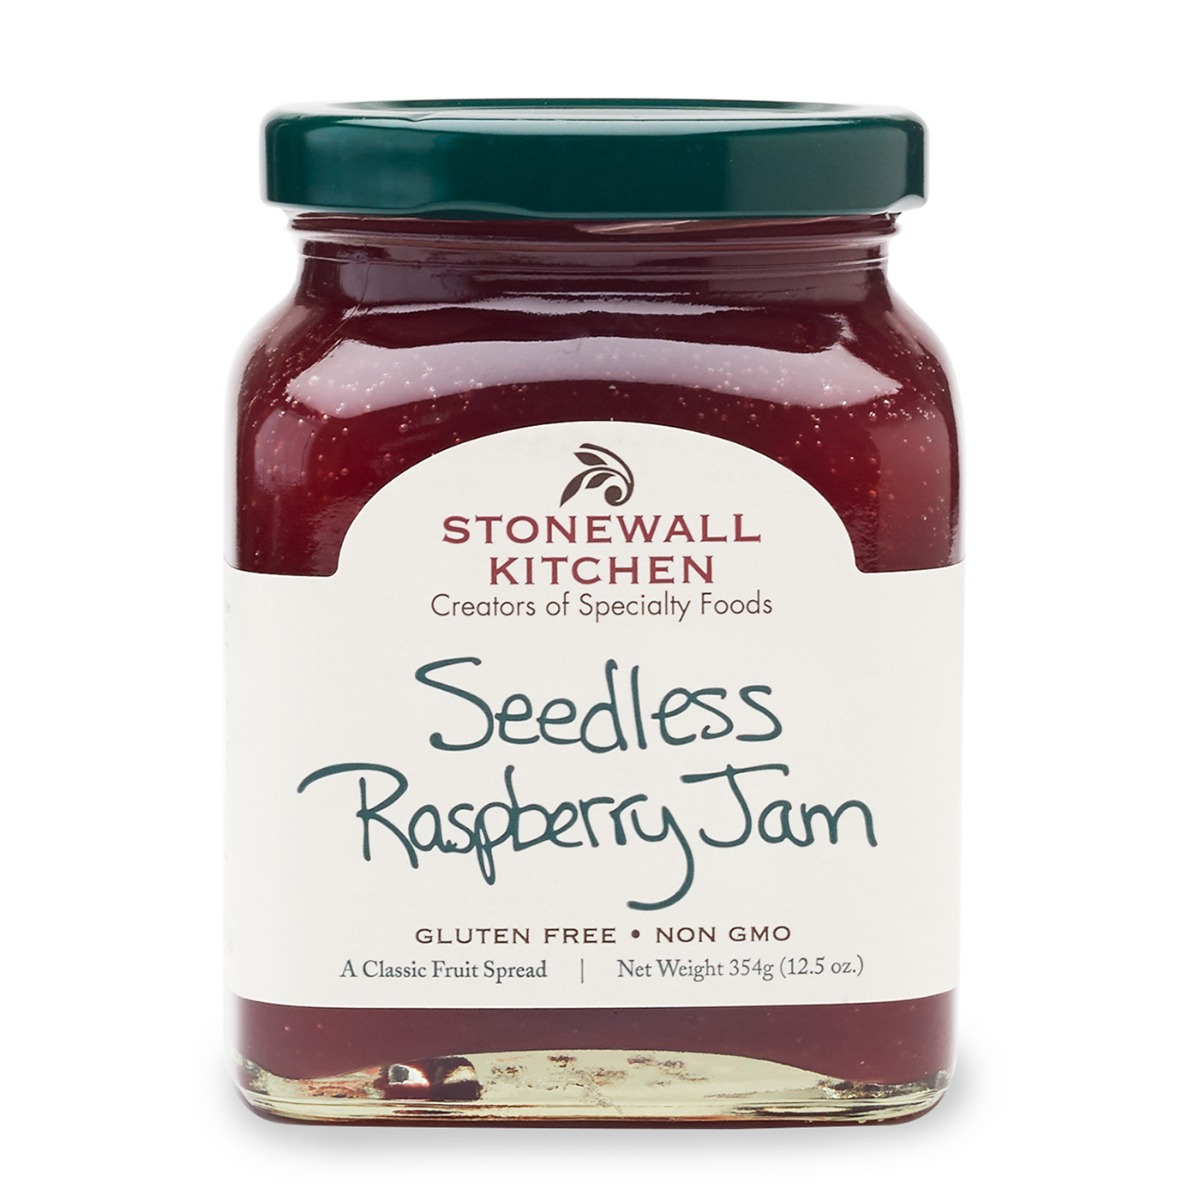 STONEWALL KITCHEN: Seedless Raspberry Jam, 12.5 oz - 0711381033159